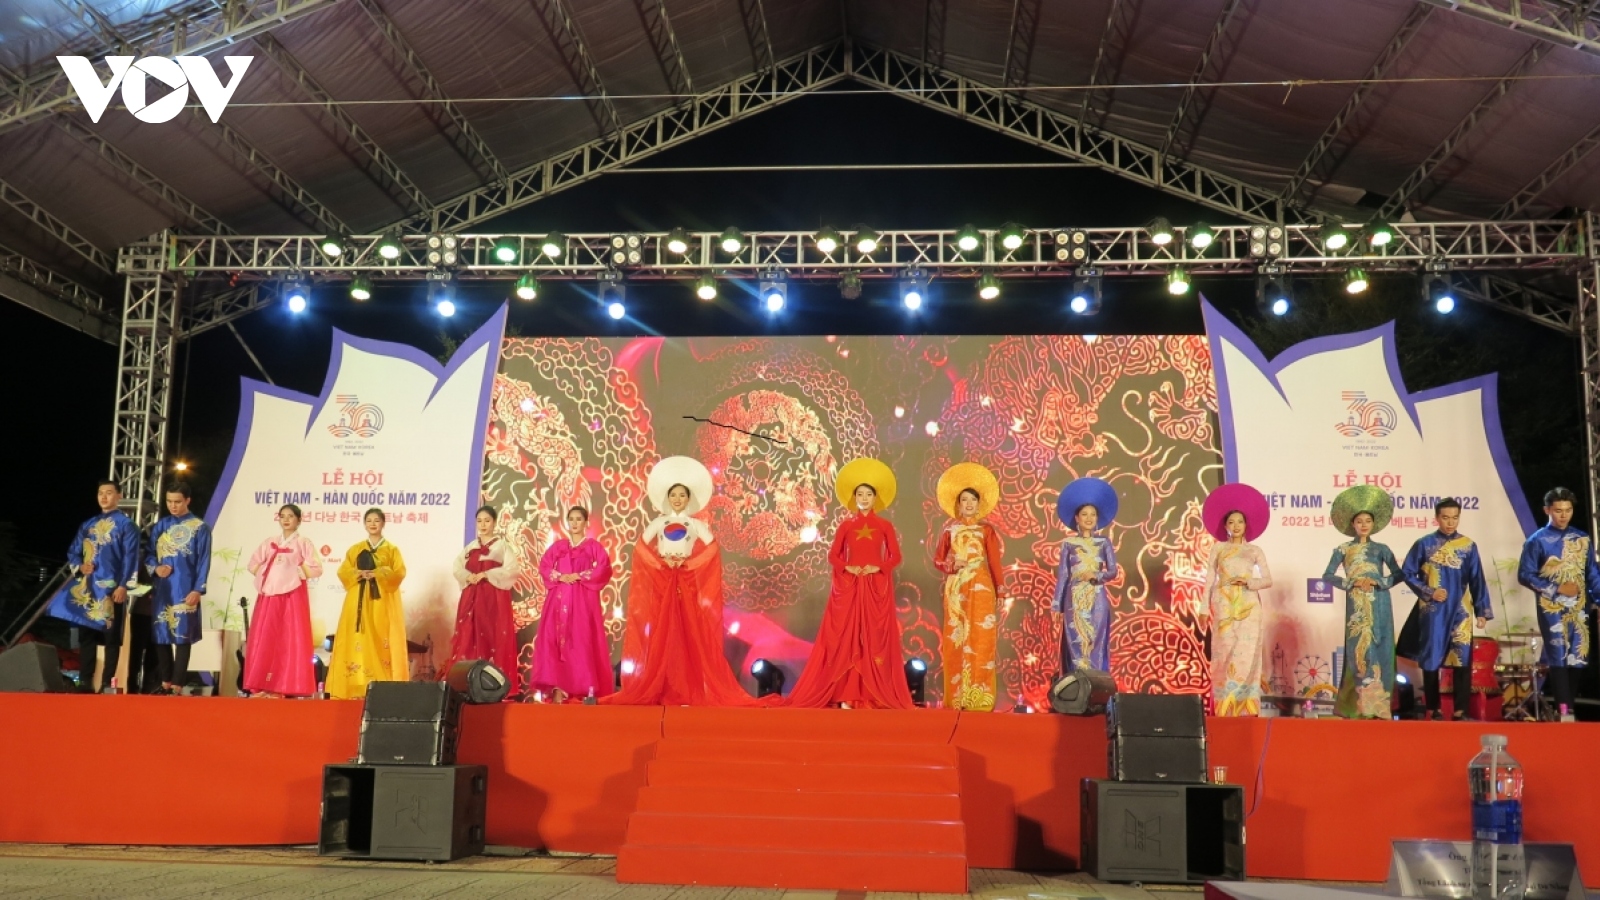 Vietnam - Korea Cultural Festival launched in Da Nang